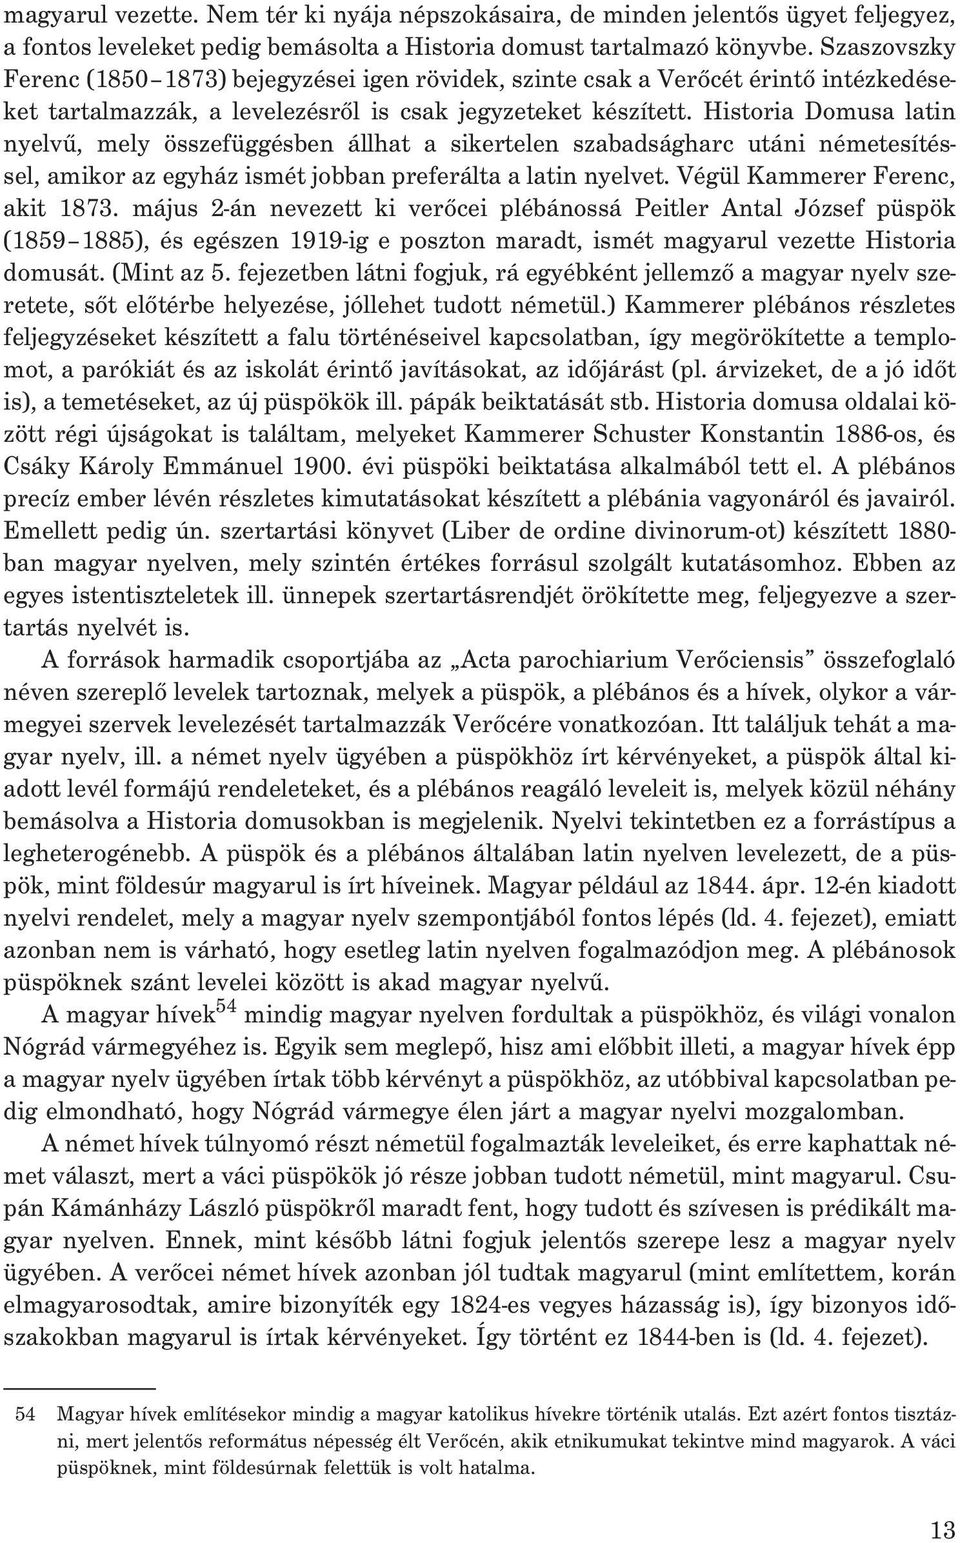 Historia Domusa latin nyelvû, mely összefüggésben állhat a sikertelen szabadságharc utáni németesítéssel, amikor az egyház ismét jobban preferálta a latin nyelvet. Végül Kammerer Ferenc, akit 1873.